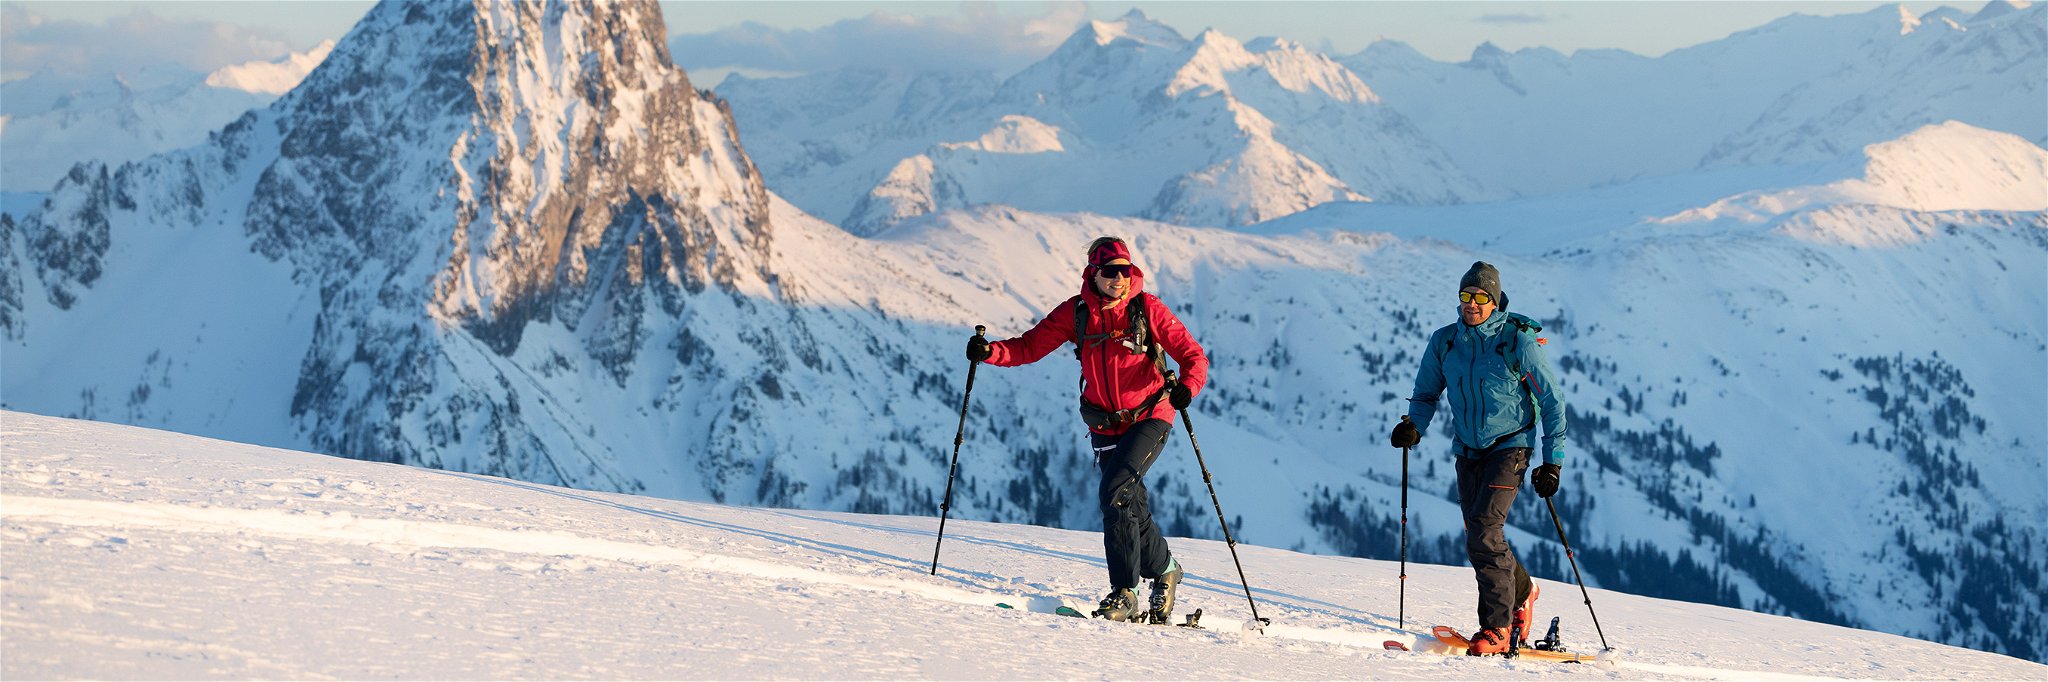 Das Brixental bietet einsame Täler mit herrlichen Skitouren.